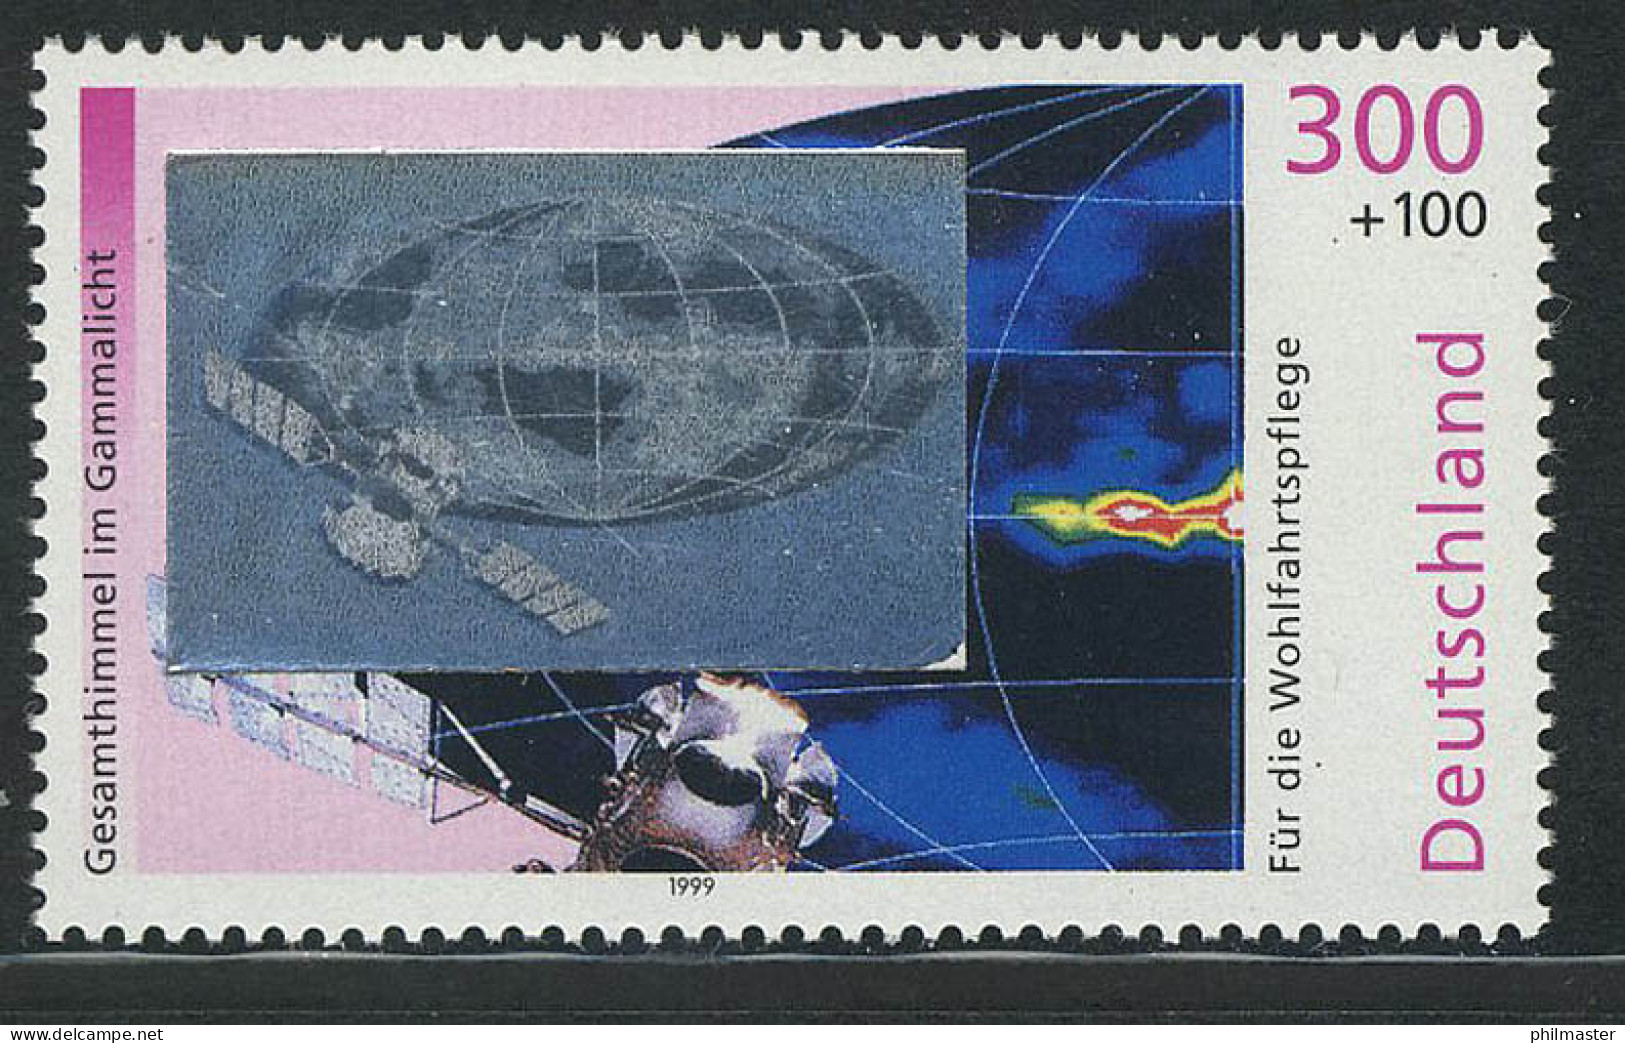 2081 Kosmos Gammastrahlung, Mit Hologramm Auf Der Marke, Postfrisch ** - Hologrammen